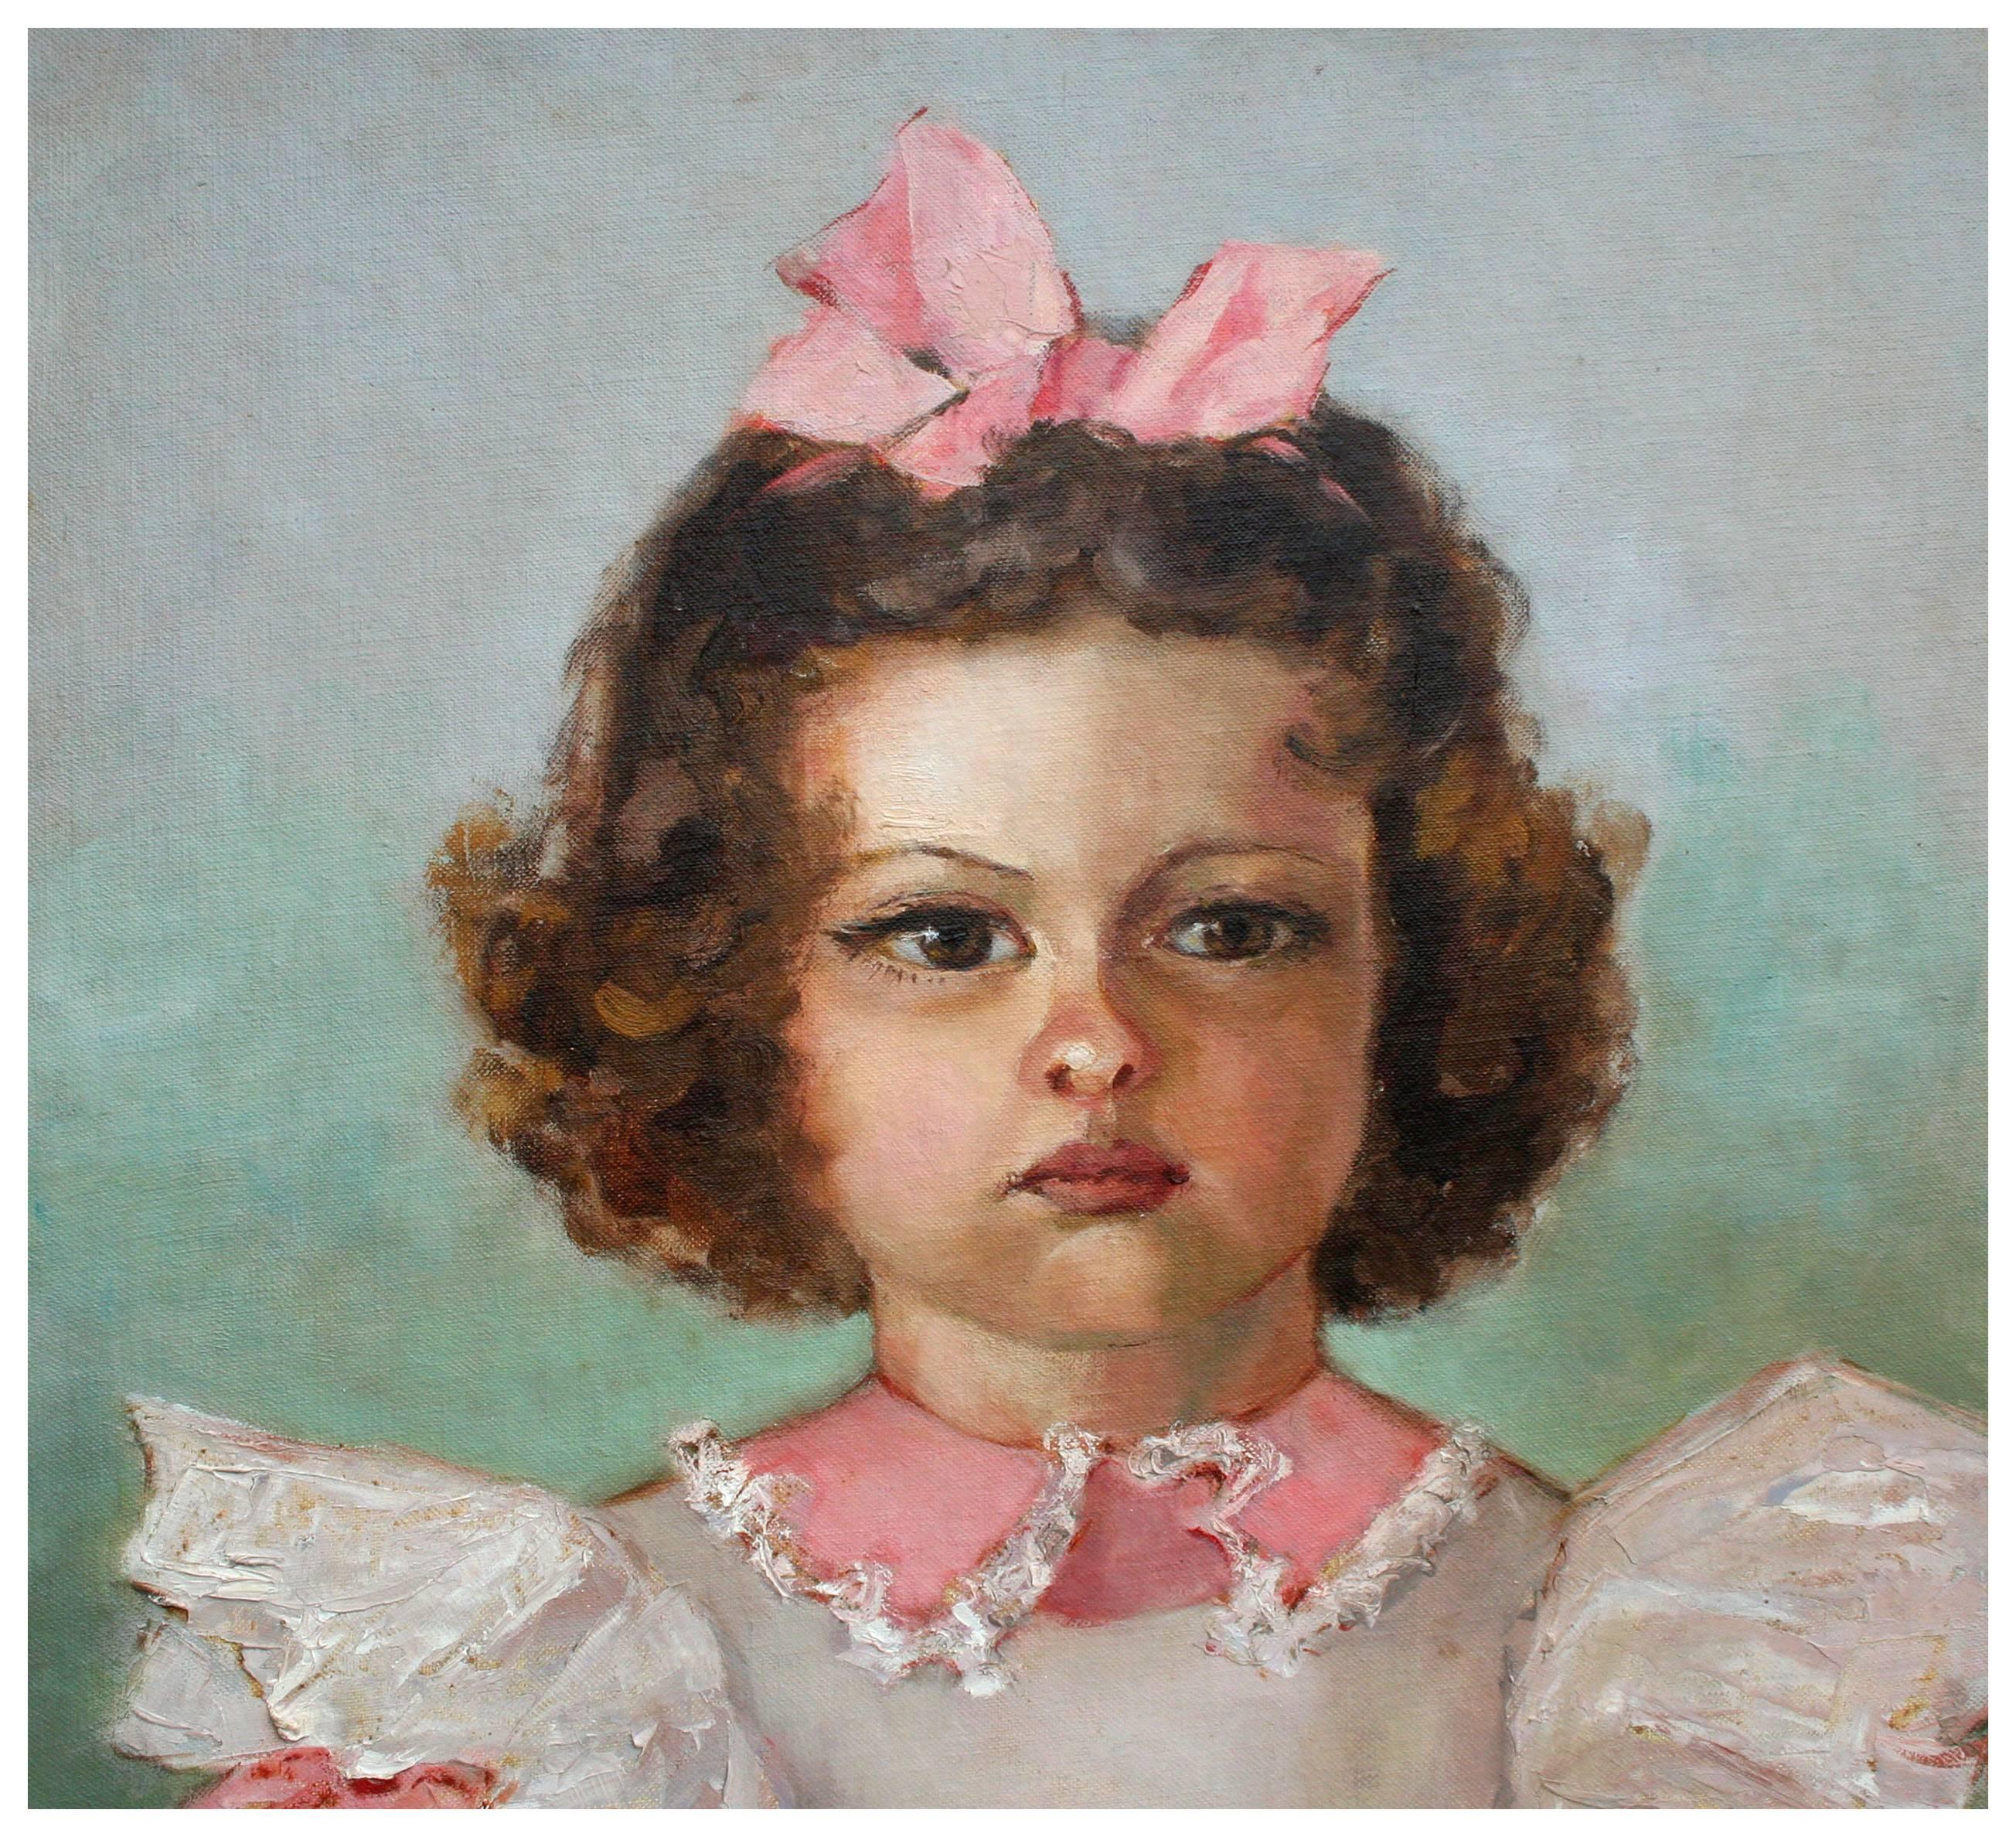 Young Girl mit rosa Schleife, Porträt, frühes 20. Jahrhundert – Painting von Helen Enoch Gleiforst